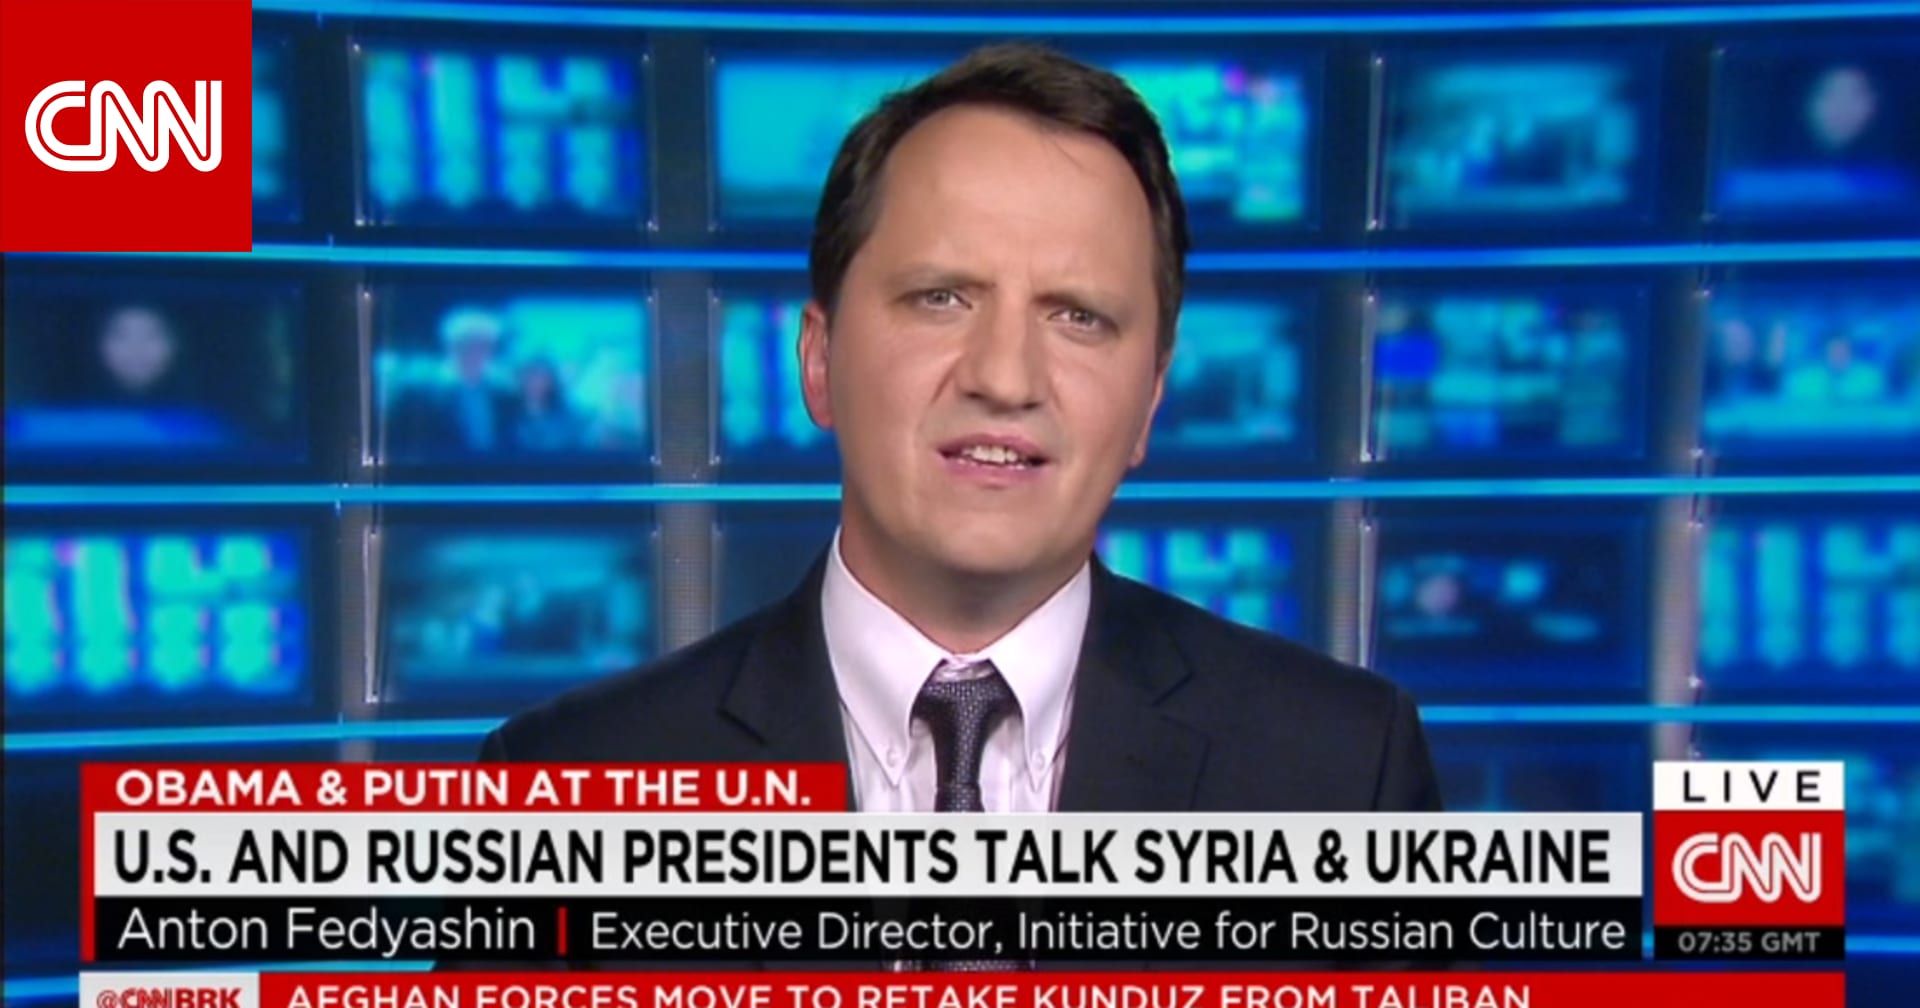 بروفيسور في التاريخ لـcnn وصف الحرب الباردة على المشادات بين أمريكا وروسيا حول سوريا وأوكرانيا تبسيط خاطئ والموقف أكثر تعقيدا Cnn Arabic